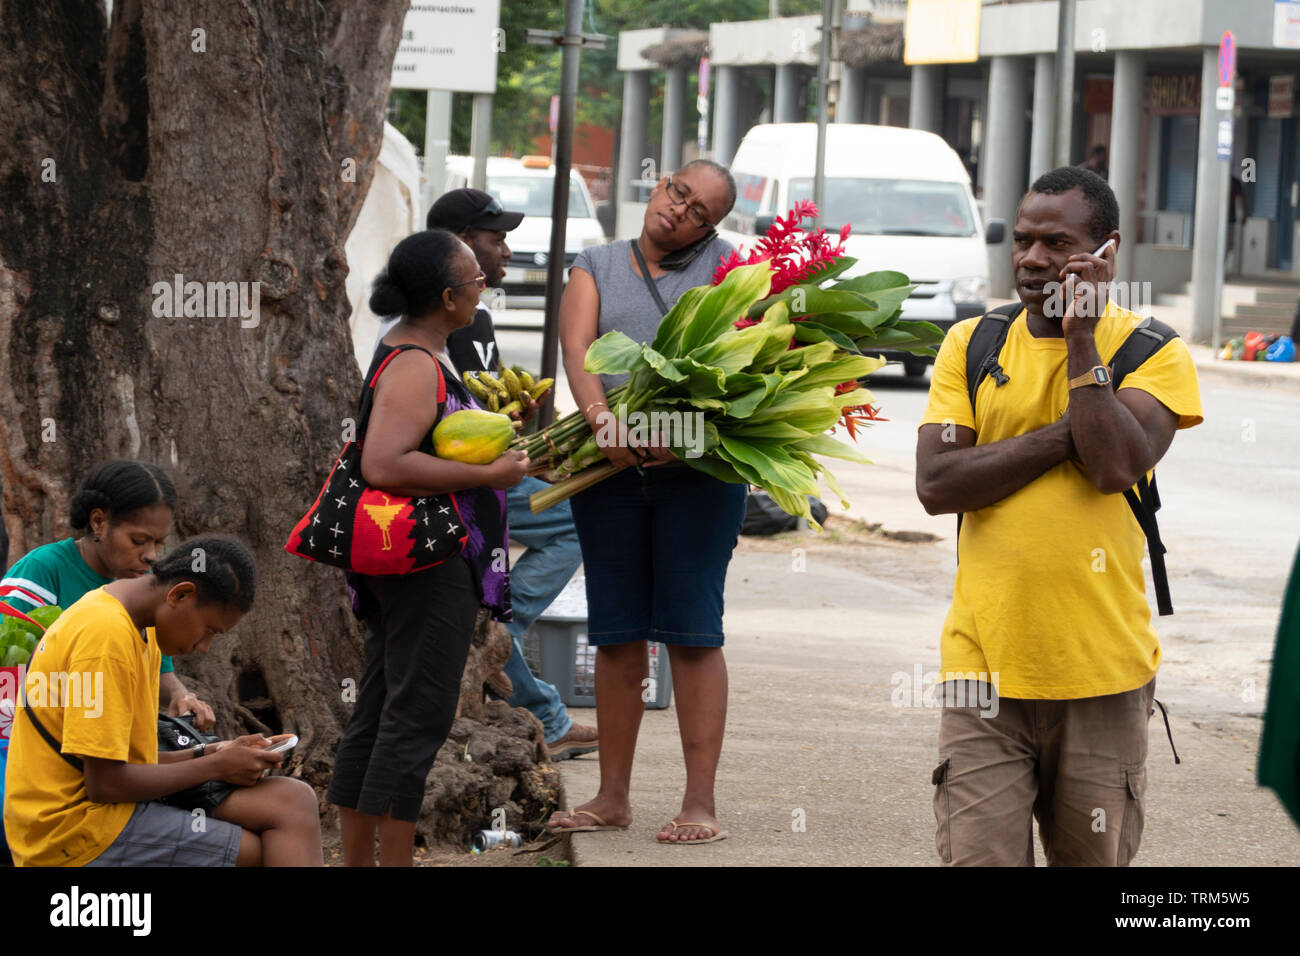 Scena di strada con persone sul loro telefono cellulare in Port Vila, l'isola di Efate, Vanuatu, Melanesia Foto Stock